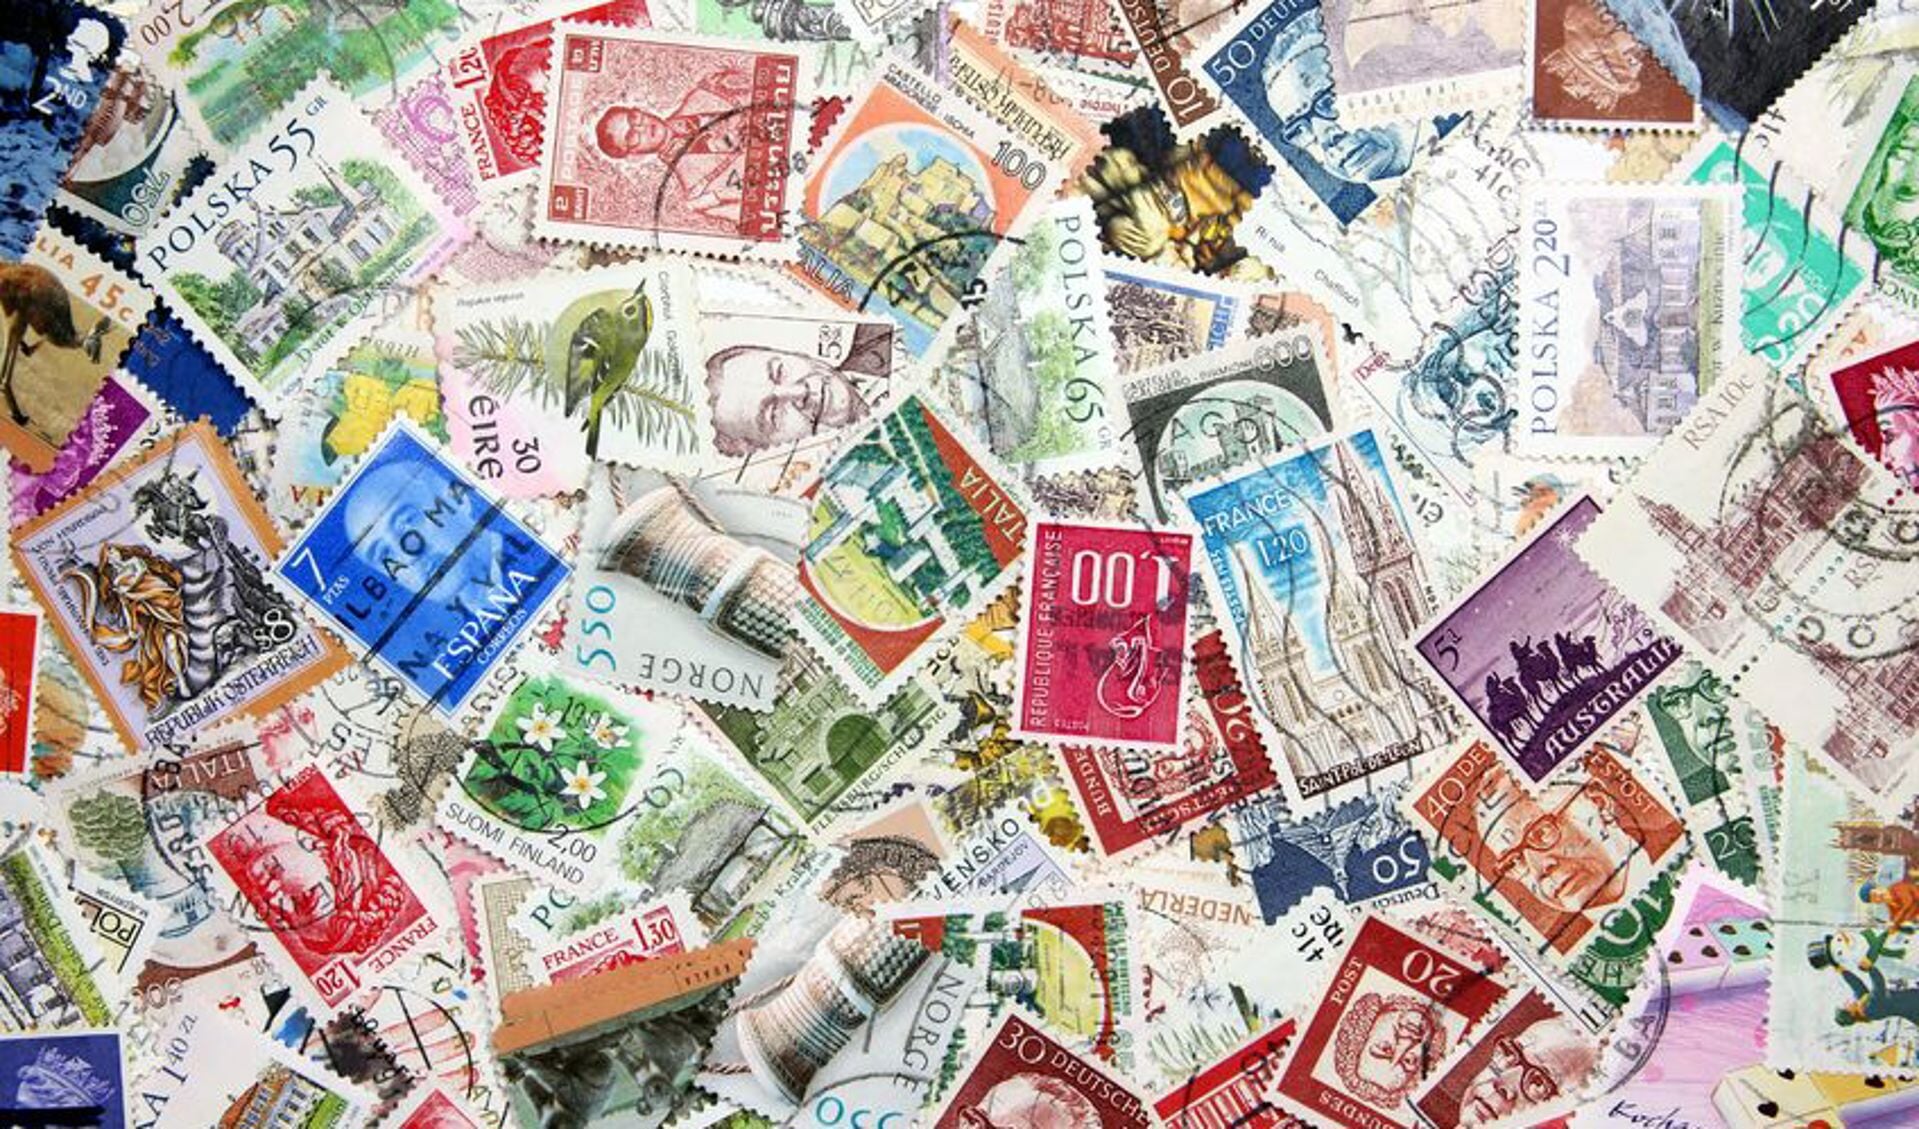 • Op het programma staat onder meer postzegels ruilen en kavels bekijken.